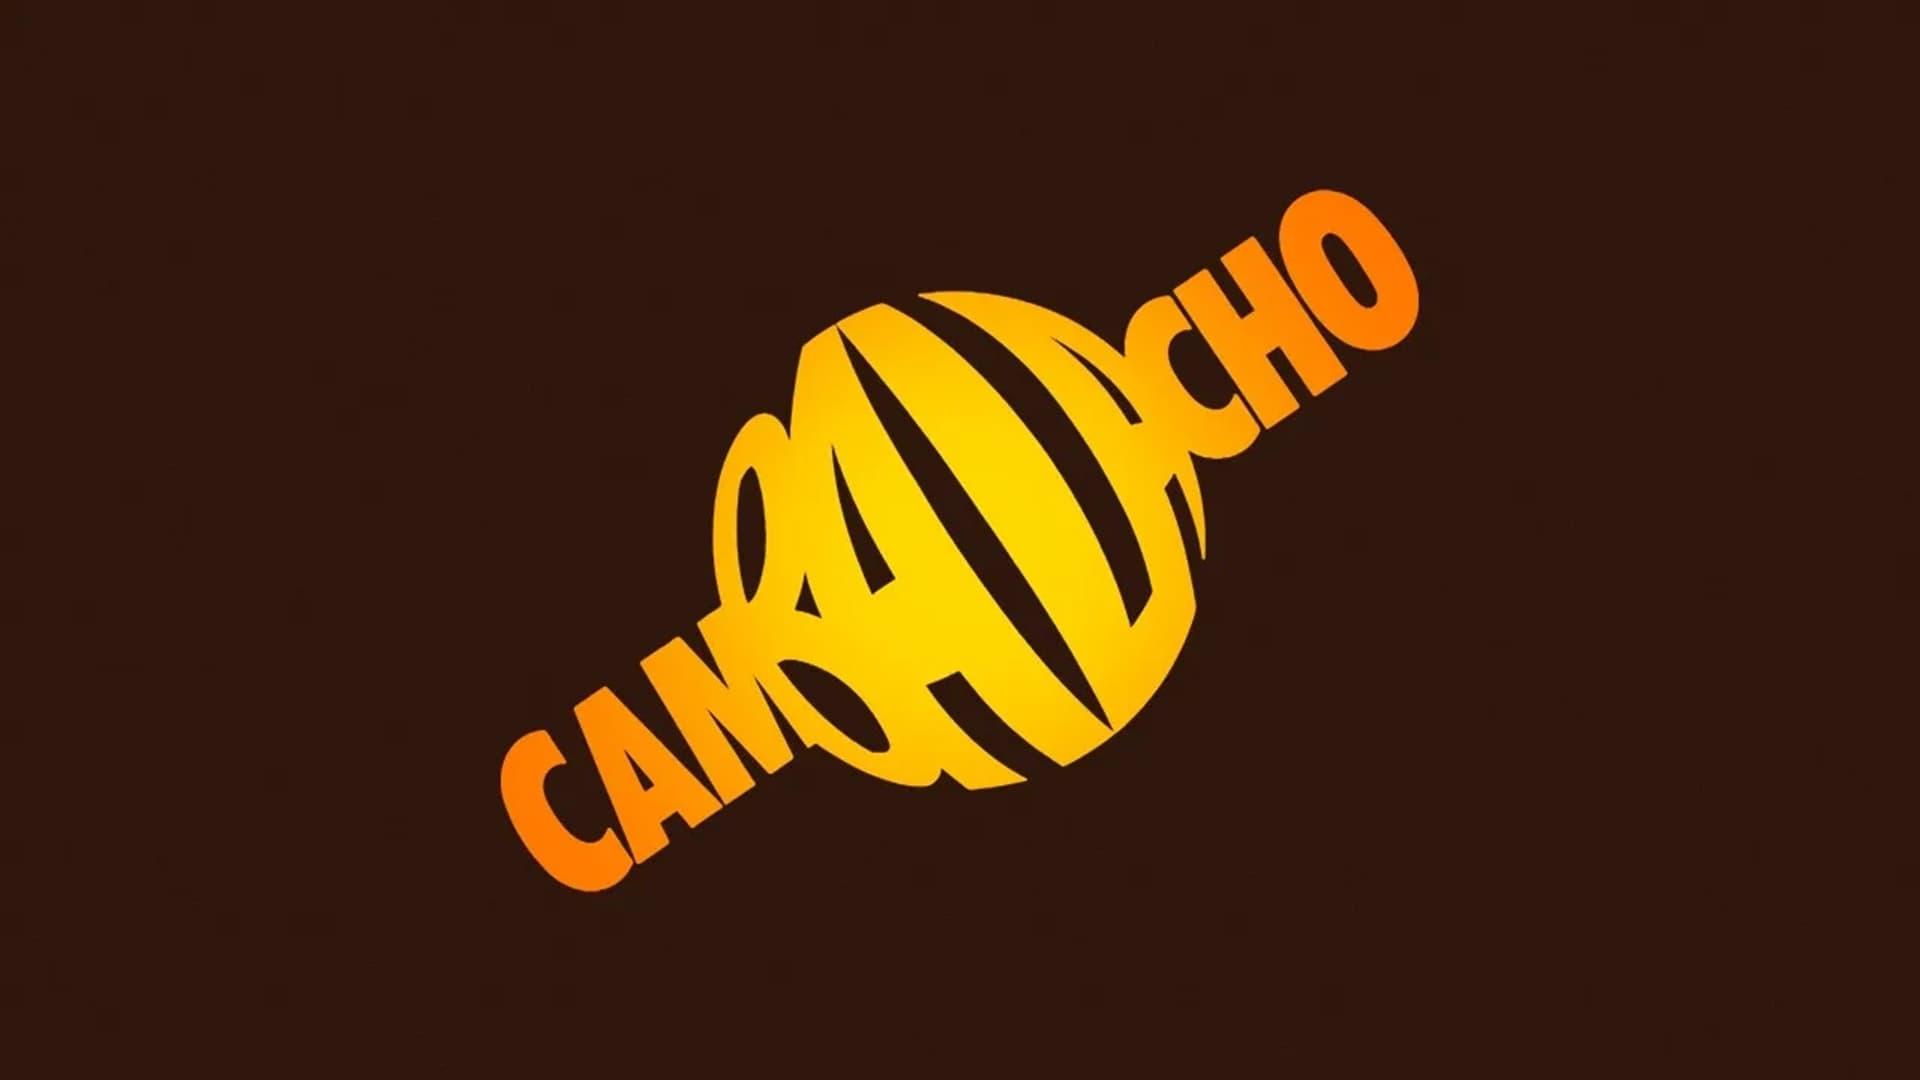 Cambalacho backdrop